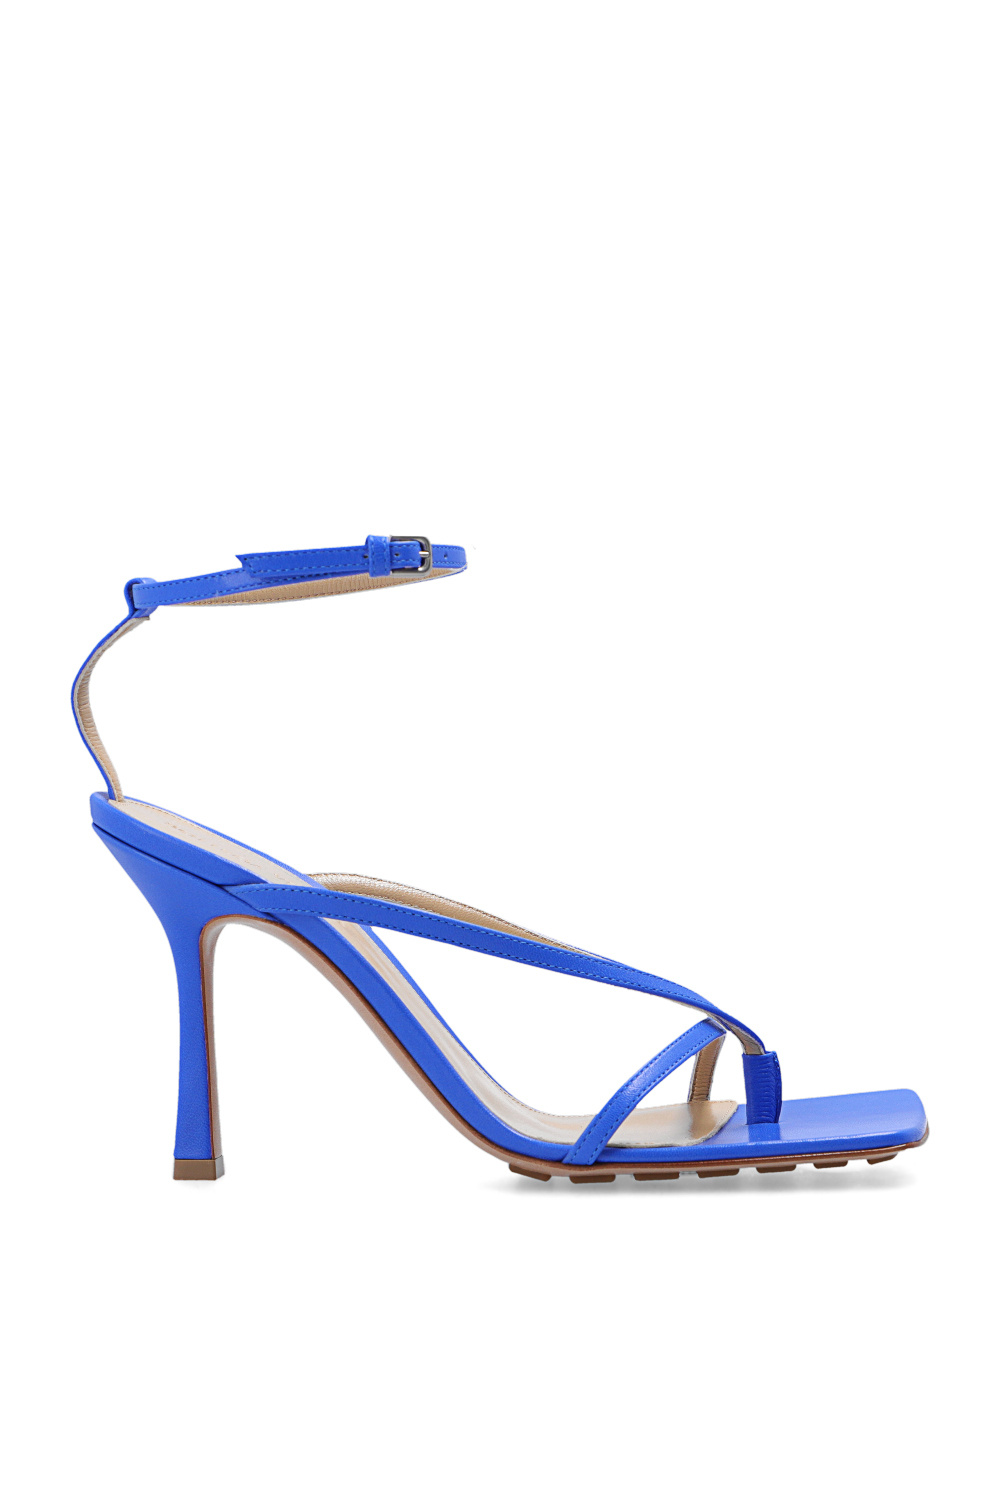 ‘Stretch’ heeled sandals Bottega Veneta - Vitkac Australia